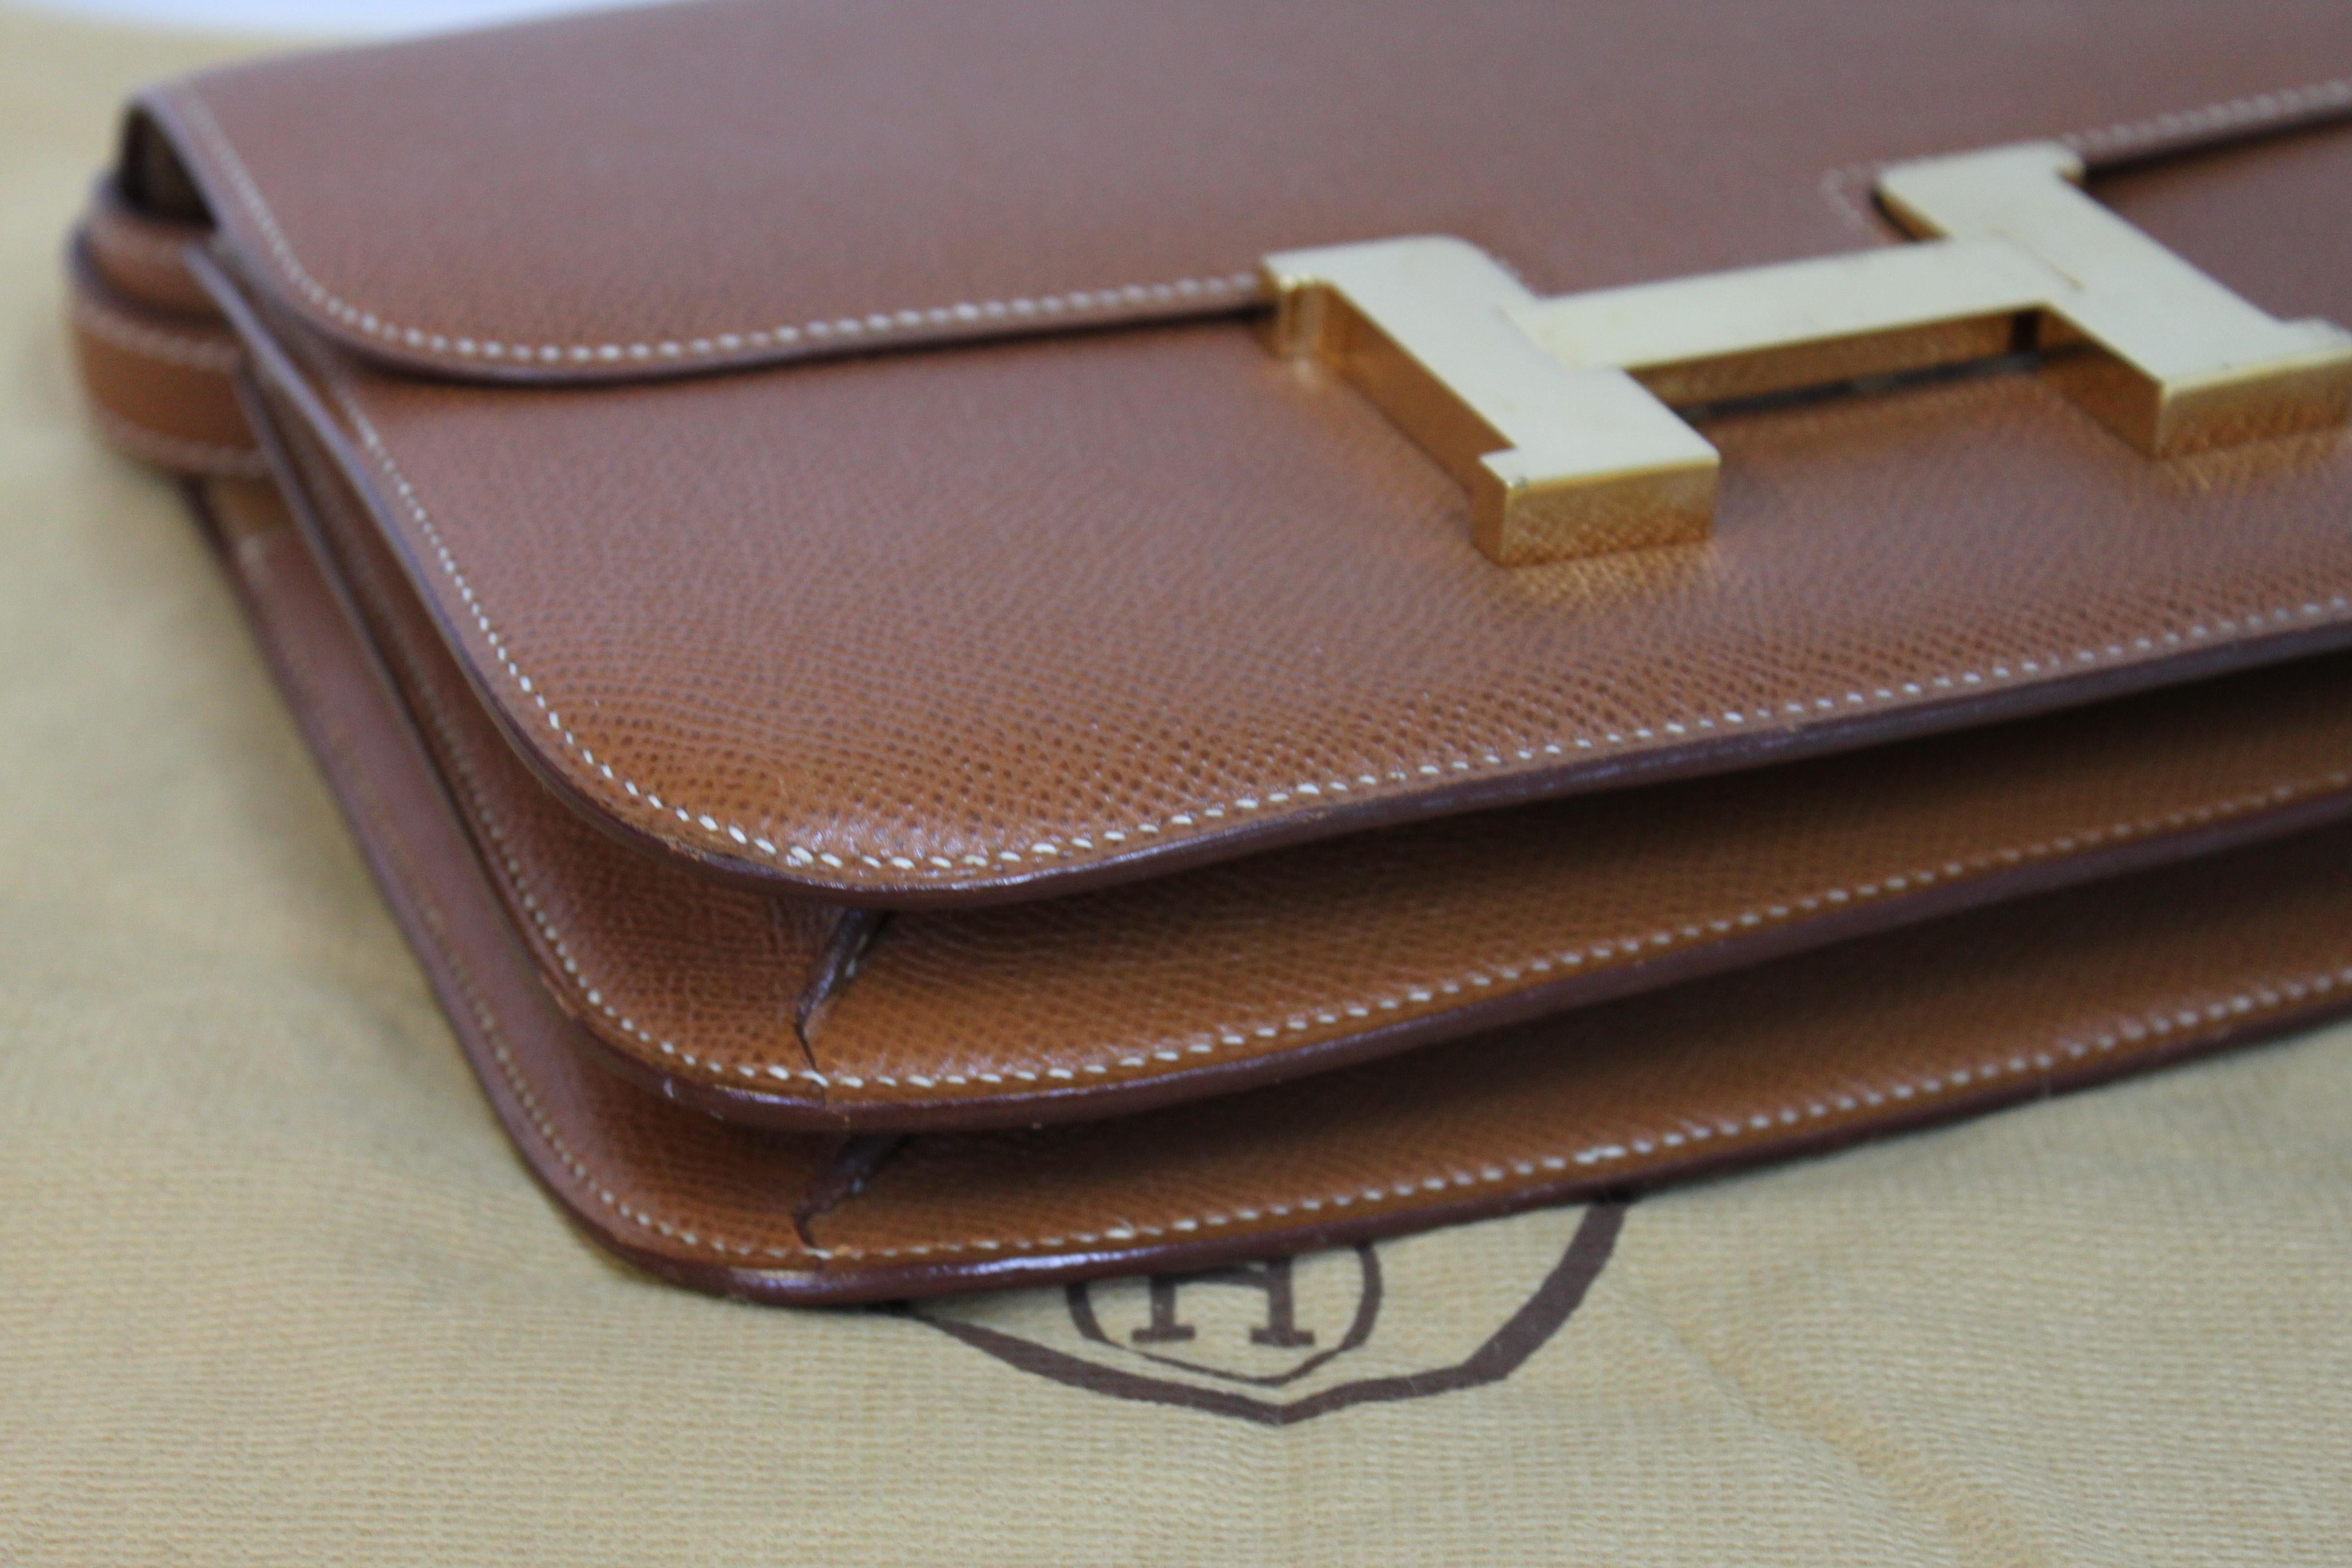 Hermes Constance 24 Shoulder Bag brown/tan epsom leather with gold Hardware For Sale 4